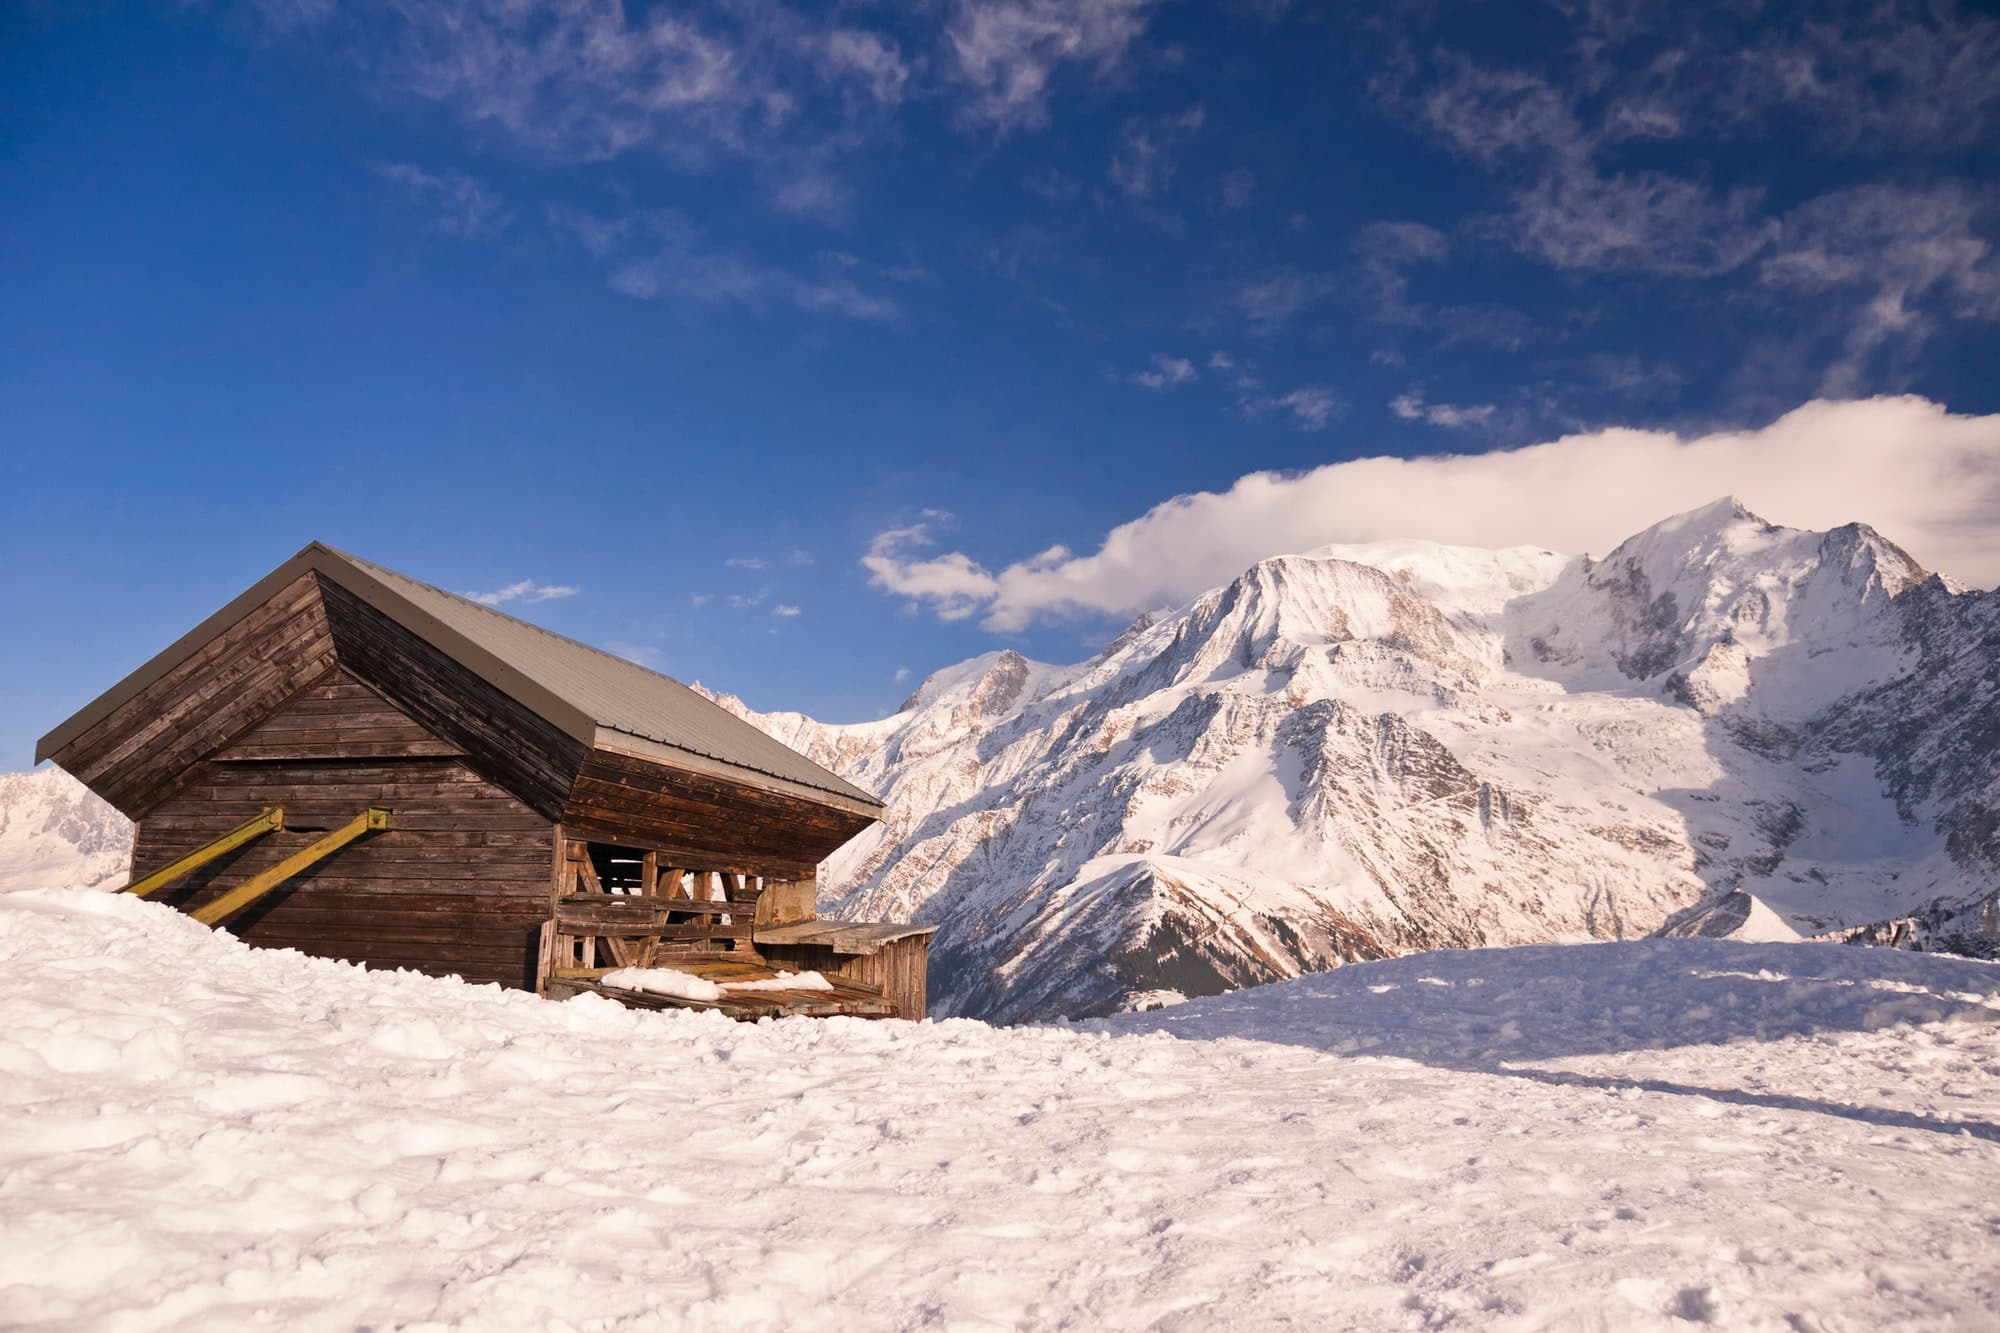 Comment les locations saisonnières à Chamonix vous offrent-elles une immersion totale dans la nature alpine ?